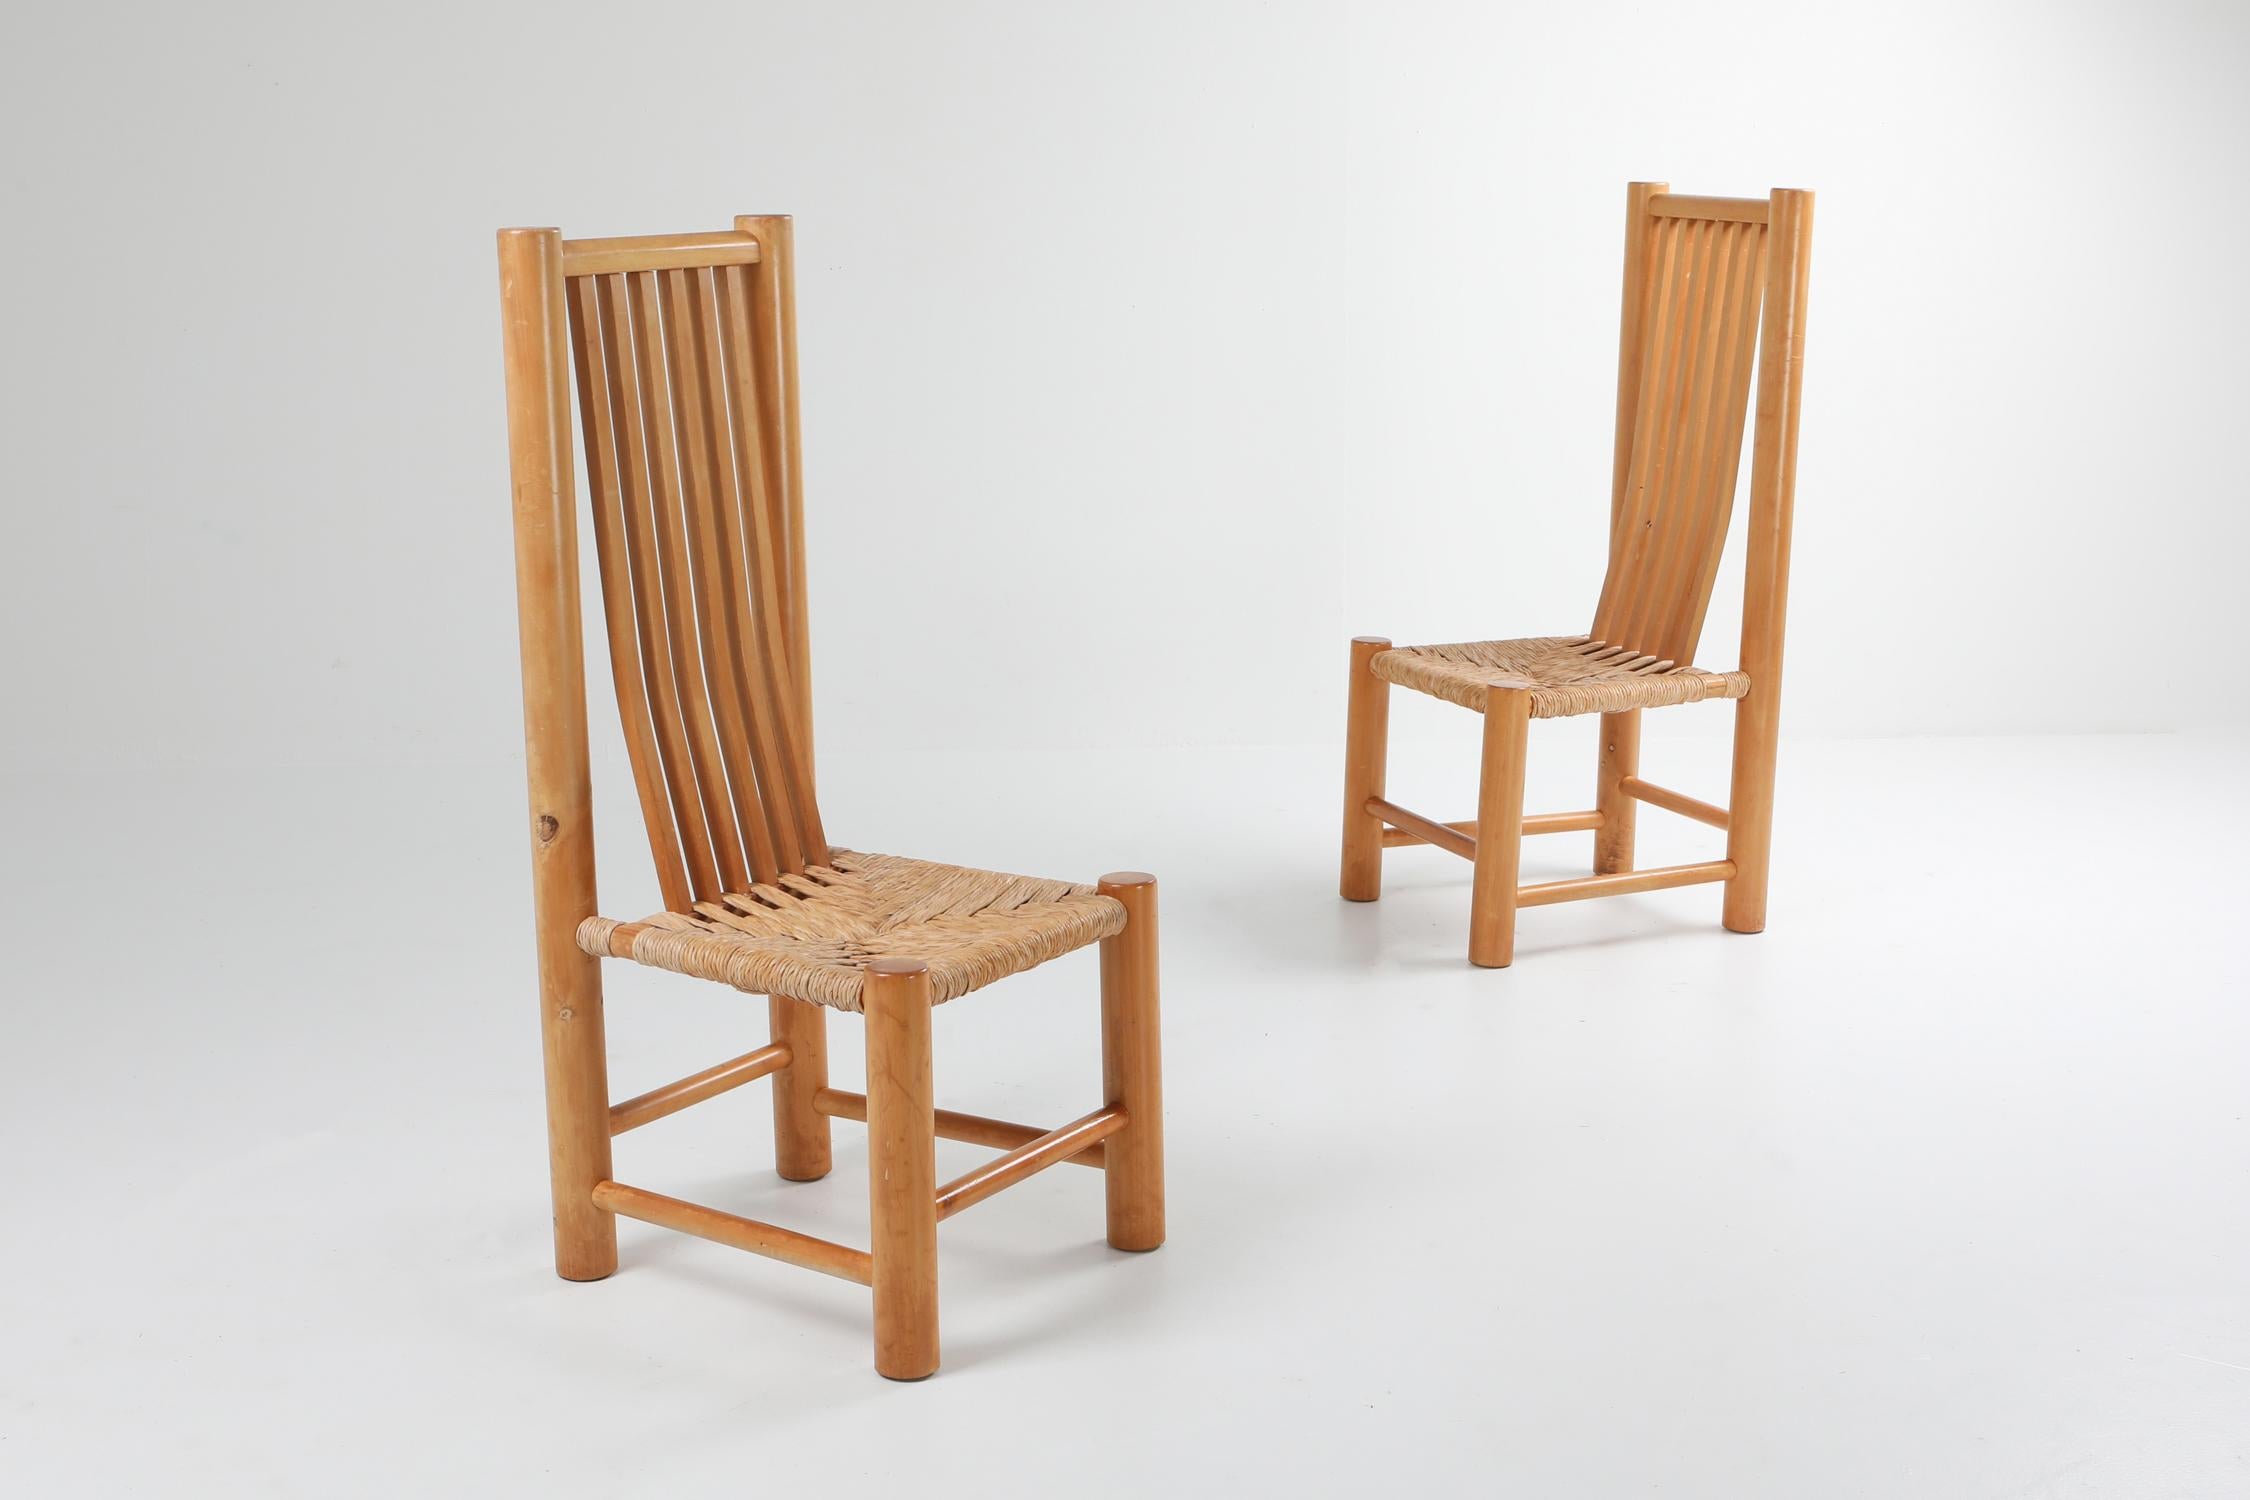 Style Pierre Chapo, chaises à haut dossier de style moderne du milieu du siècle, orme français, France, années 1960.
Ensemble naturaliste de huit chaises de salle à manger avec une assise en corde tressée.
Nous disposons également d'un lit de